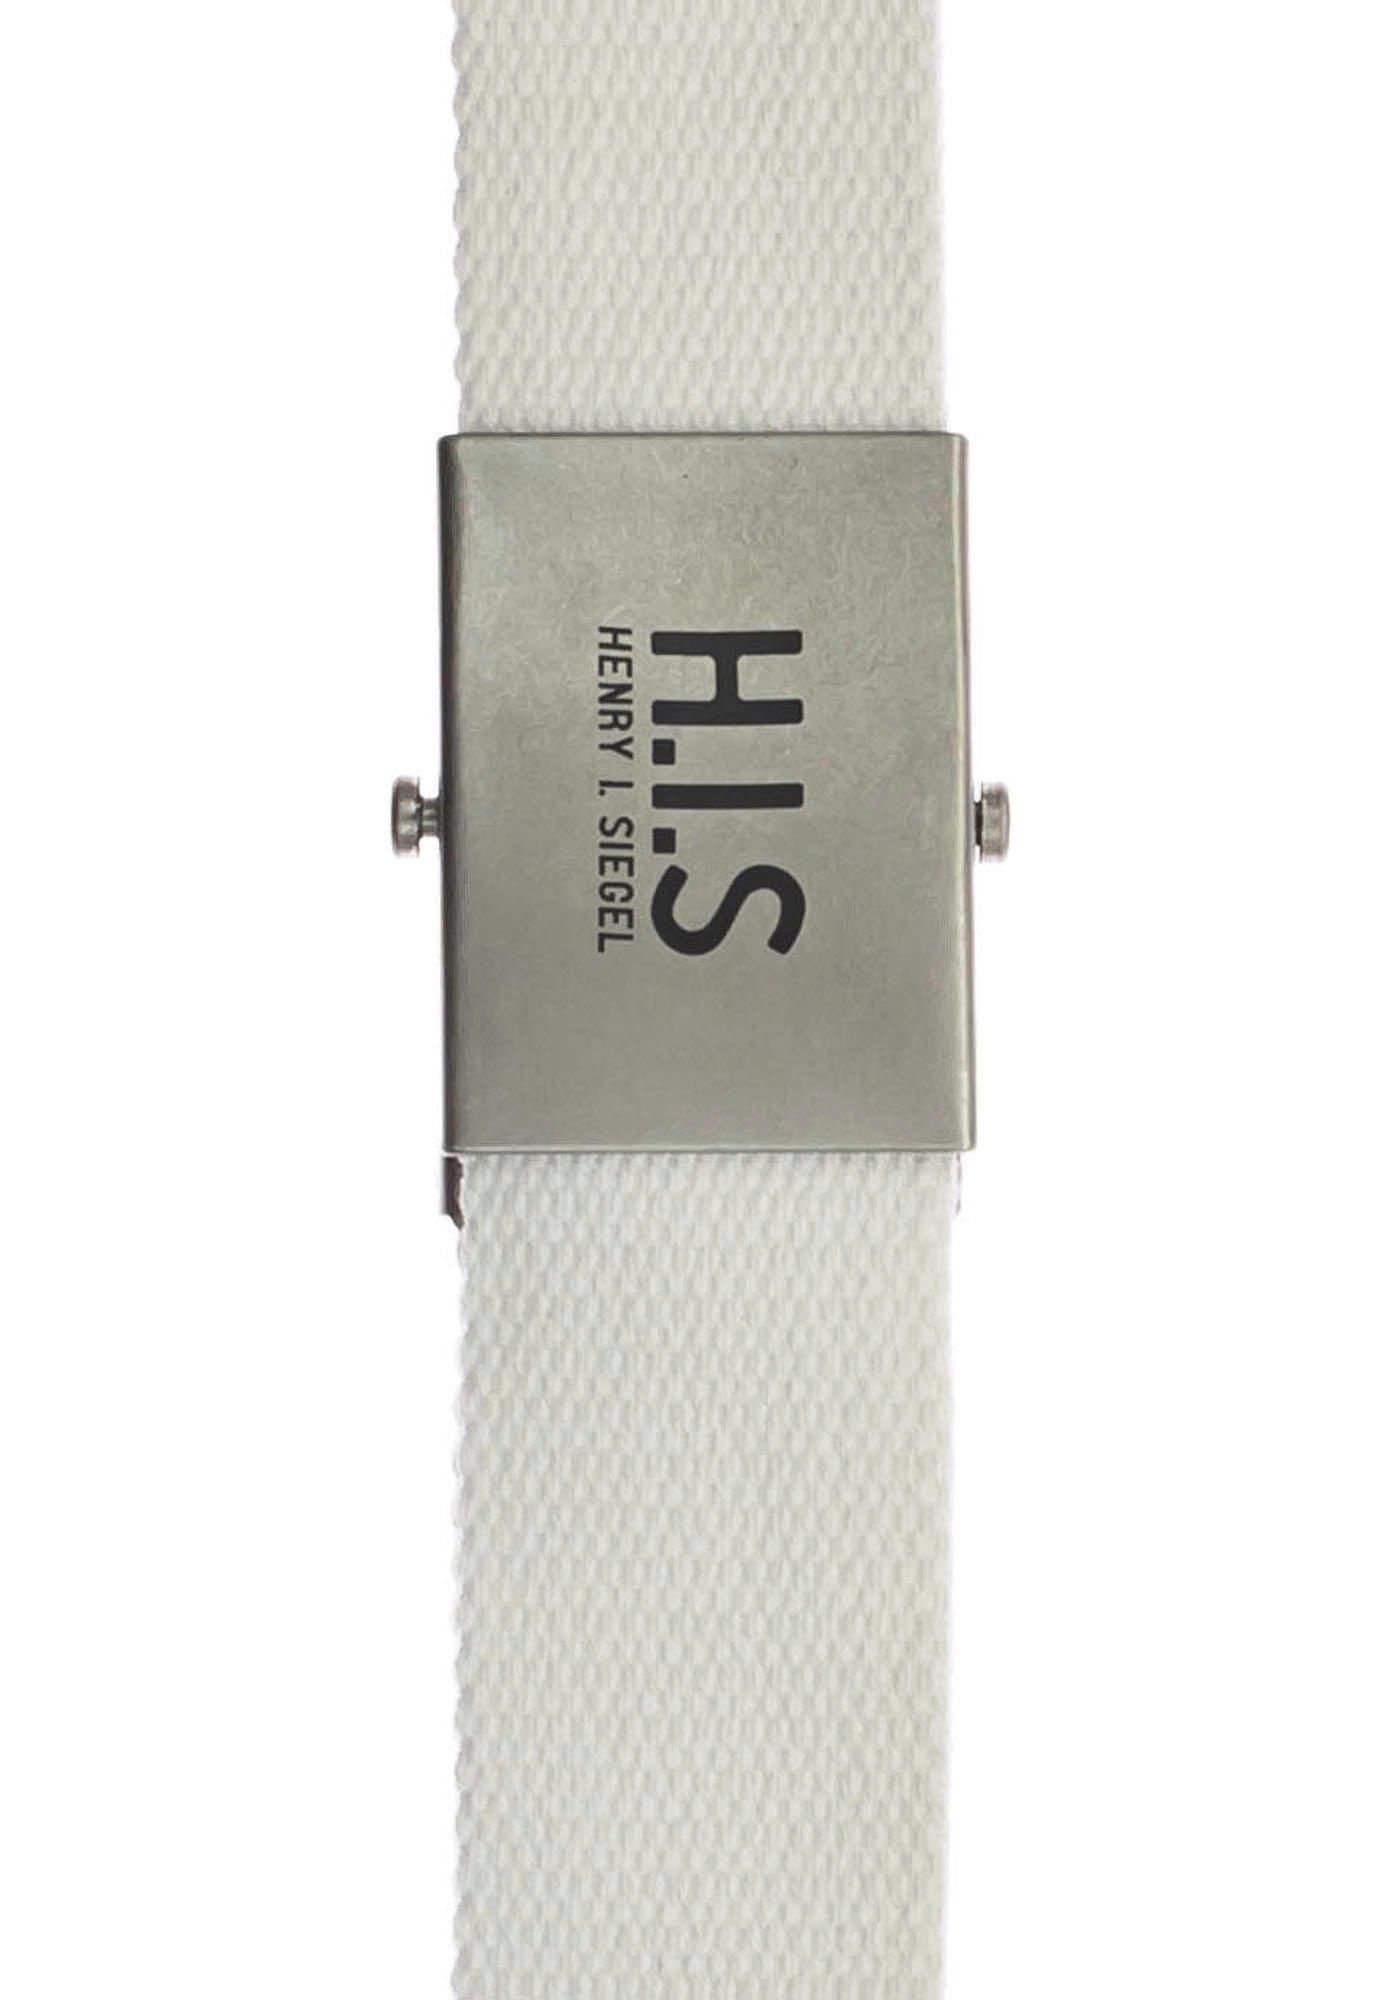 H.I.S Stoffgürtel Bandgürtel mit weiss der H.I.S Koppelschließe Logo auf